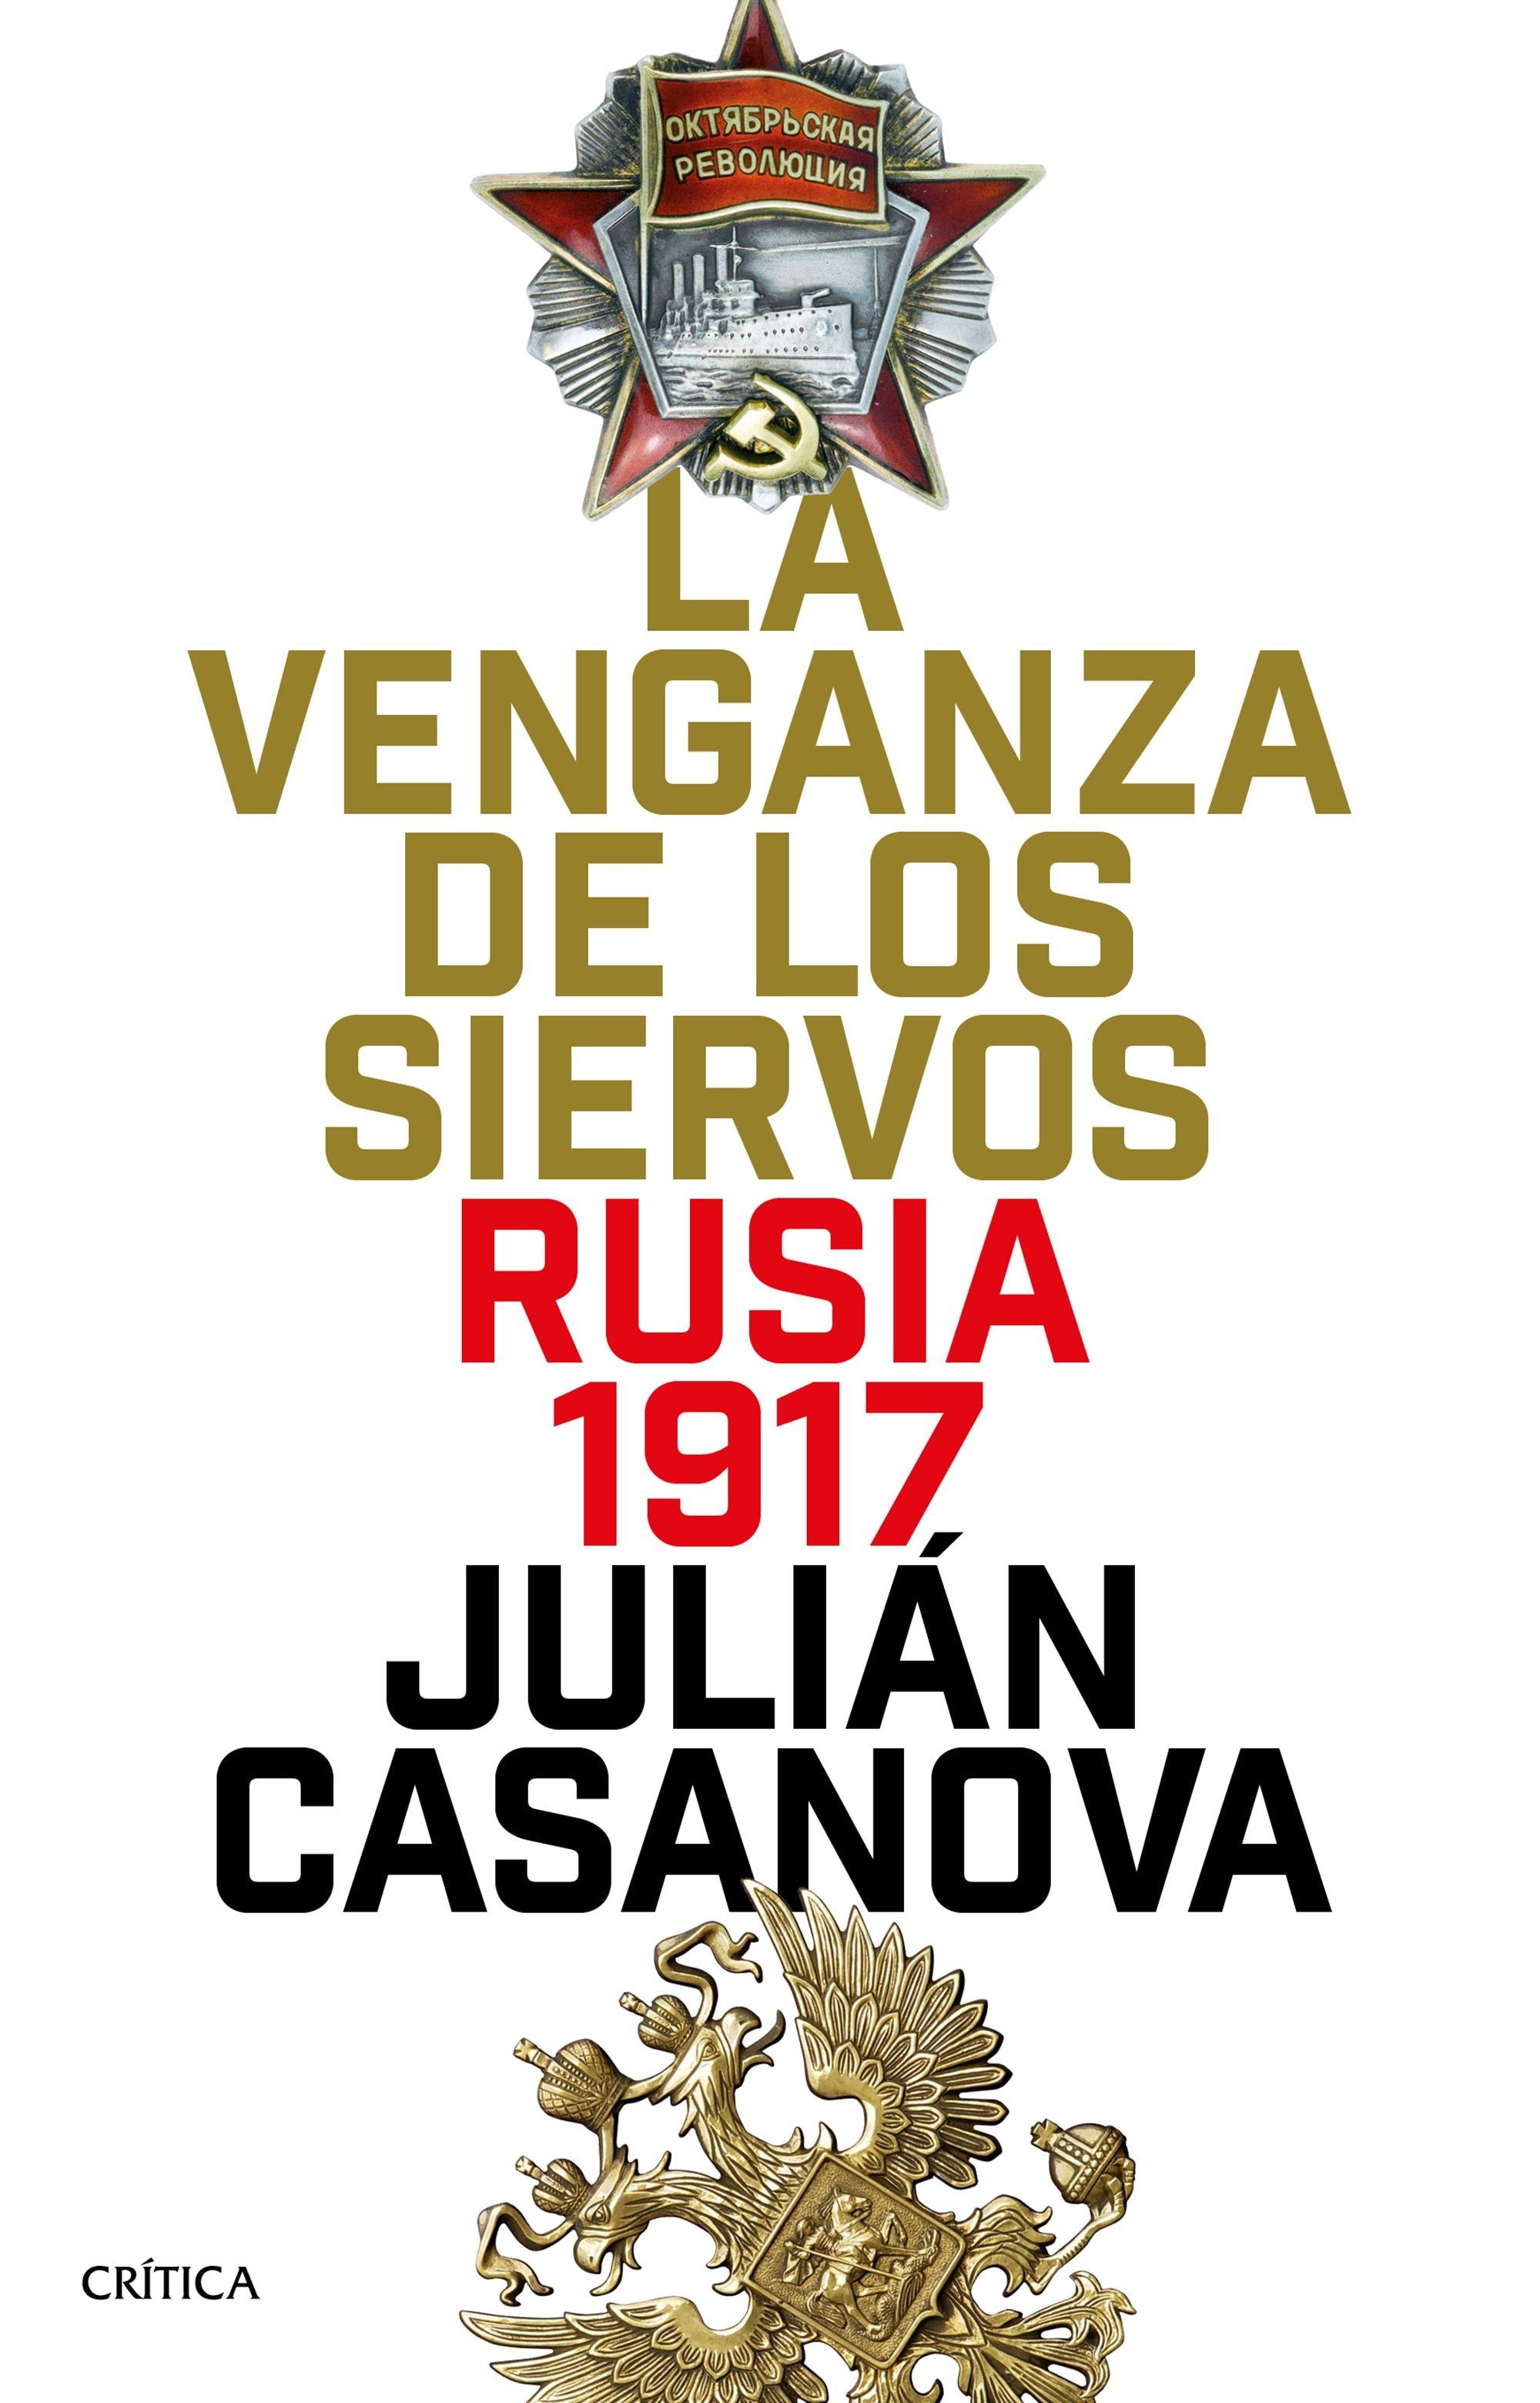 La Venganza de los Siervos "Rusia 1917"